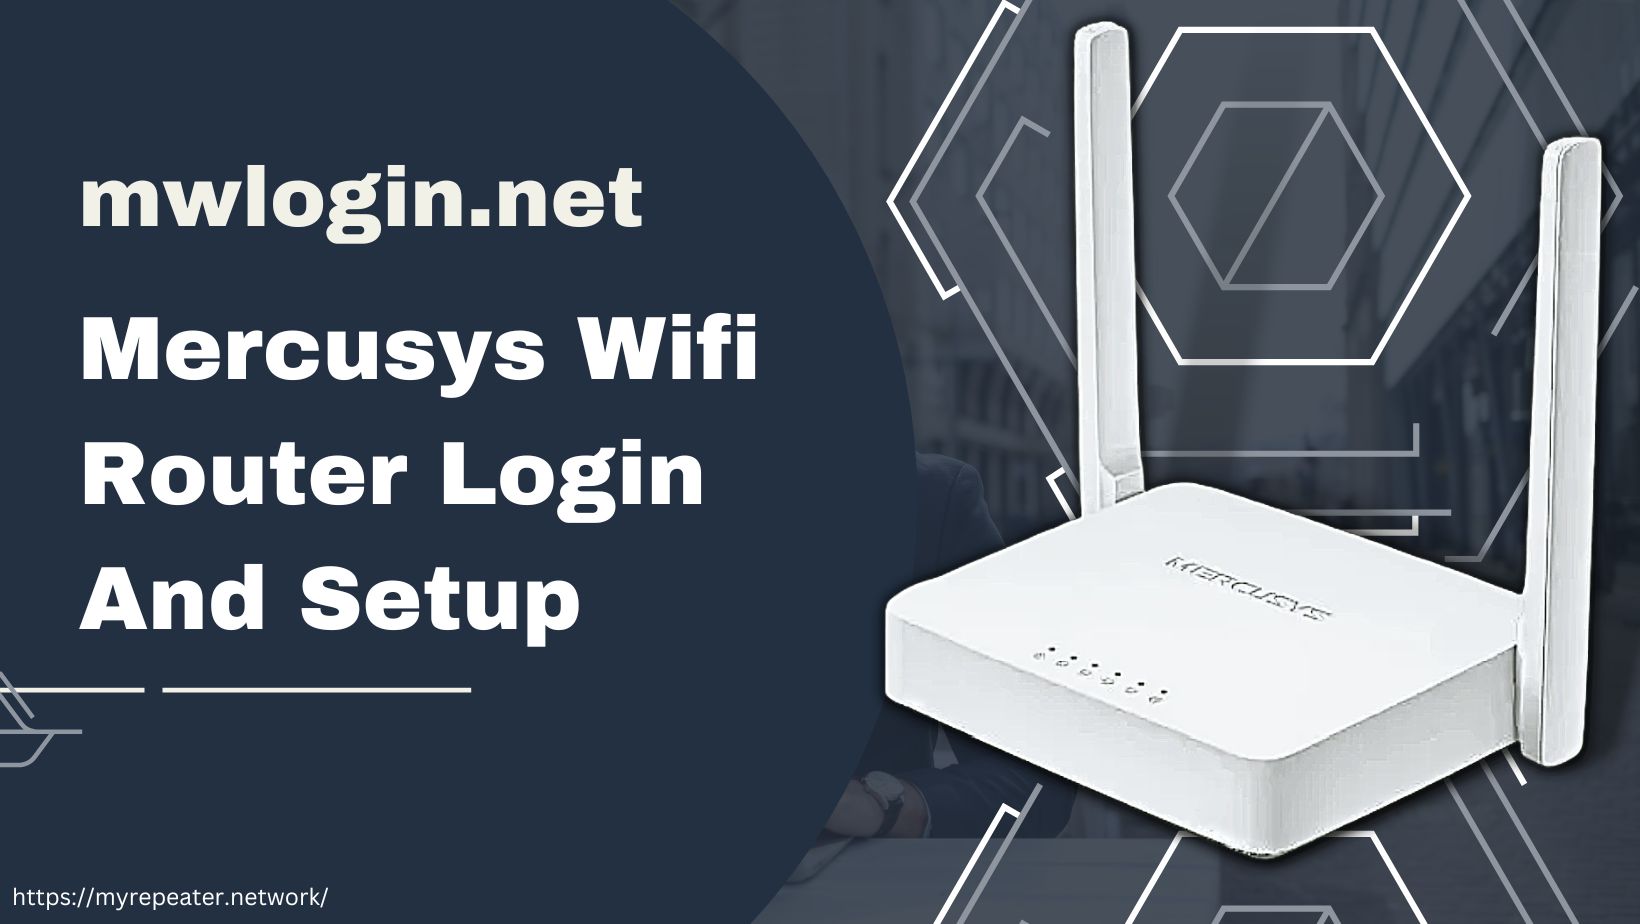 mwlogin.net - Mercusys Router Login And Setup - 192.168.1.1